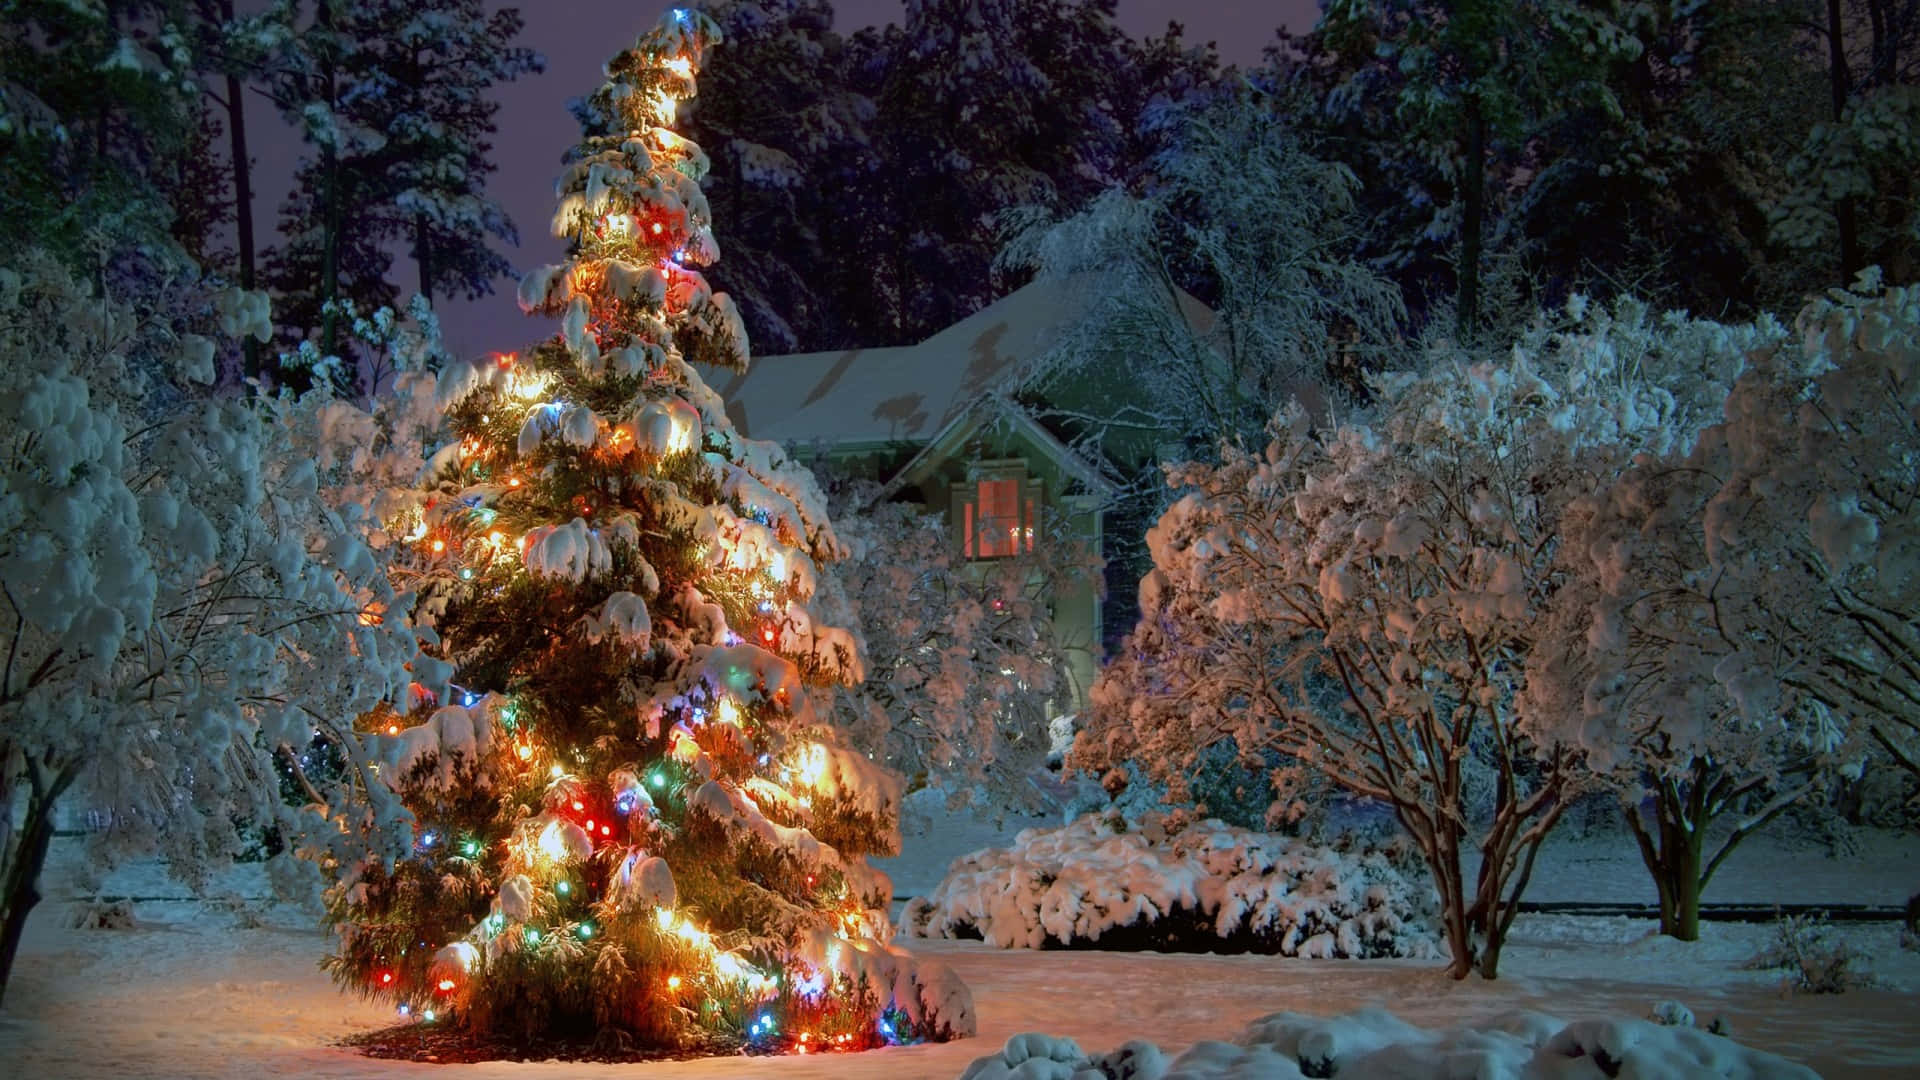 Julenär Säkerligen Fylld Av Glädje Och Cheer Med Detta Vackra Och Festliga Träd Som Dess Mittpunkt.